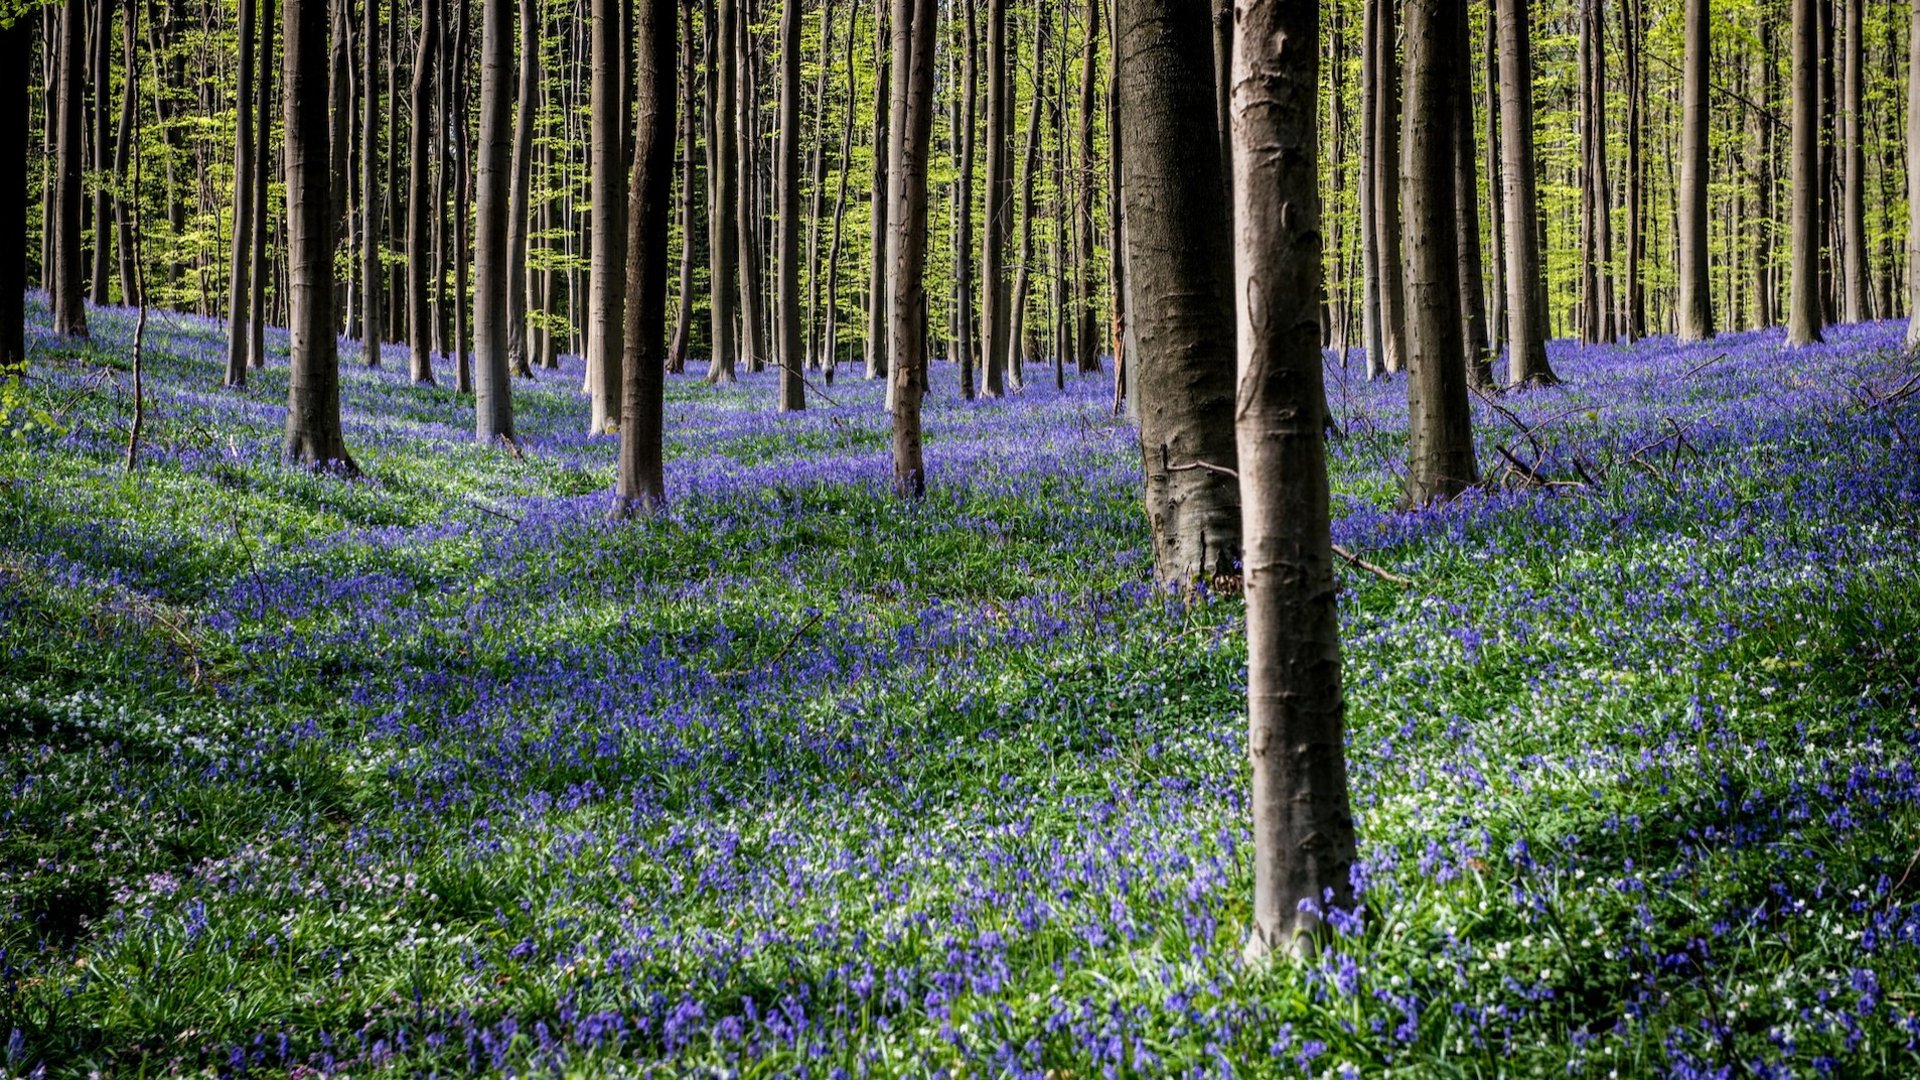 Frühlingshafter Laubwald, bedeckt mit einem Teppich aus blauen Glockenblumen, vermittelt ein friedvolles Naturerlebnis.